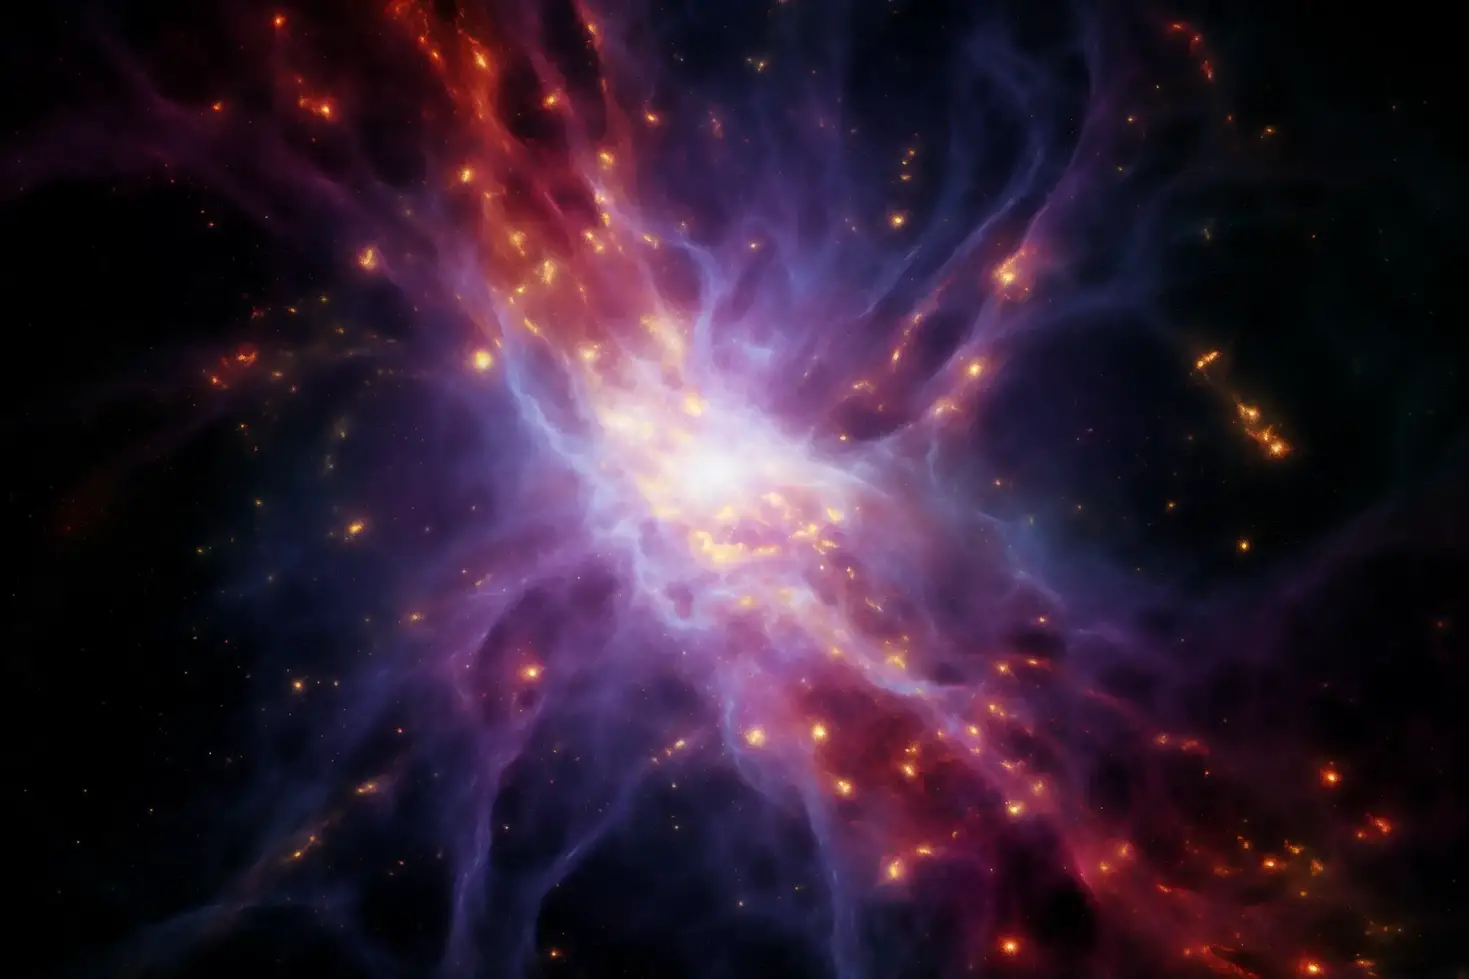 Astrofizikçiler Kozmik Şafaktaki “İmkansız” Parlaklığı Açıklıyor - Dünyadan Güncel Teknoloji Haberleri